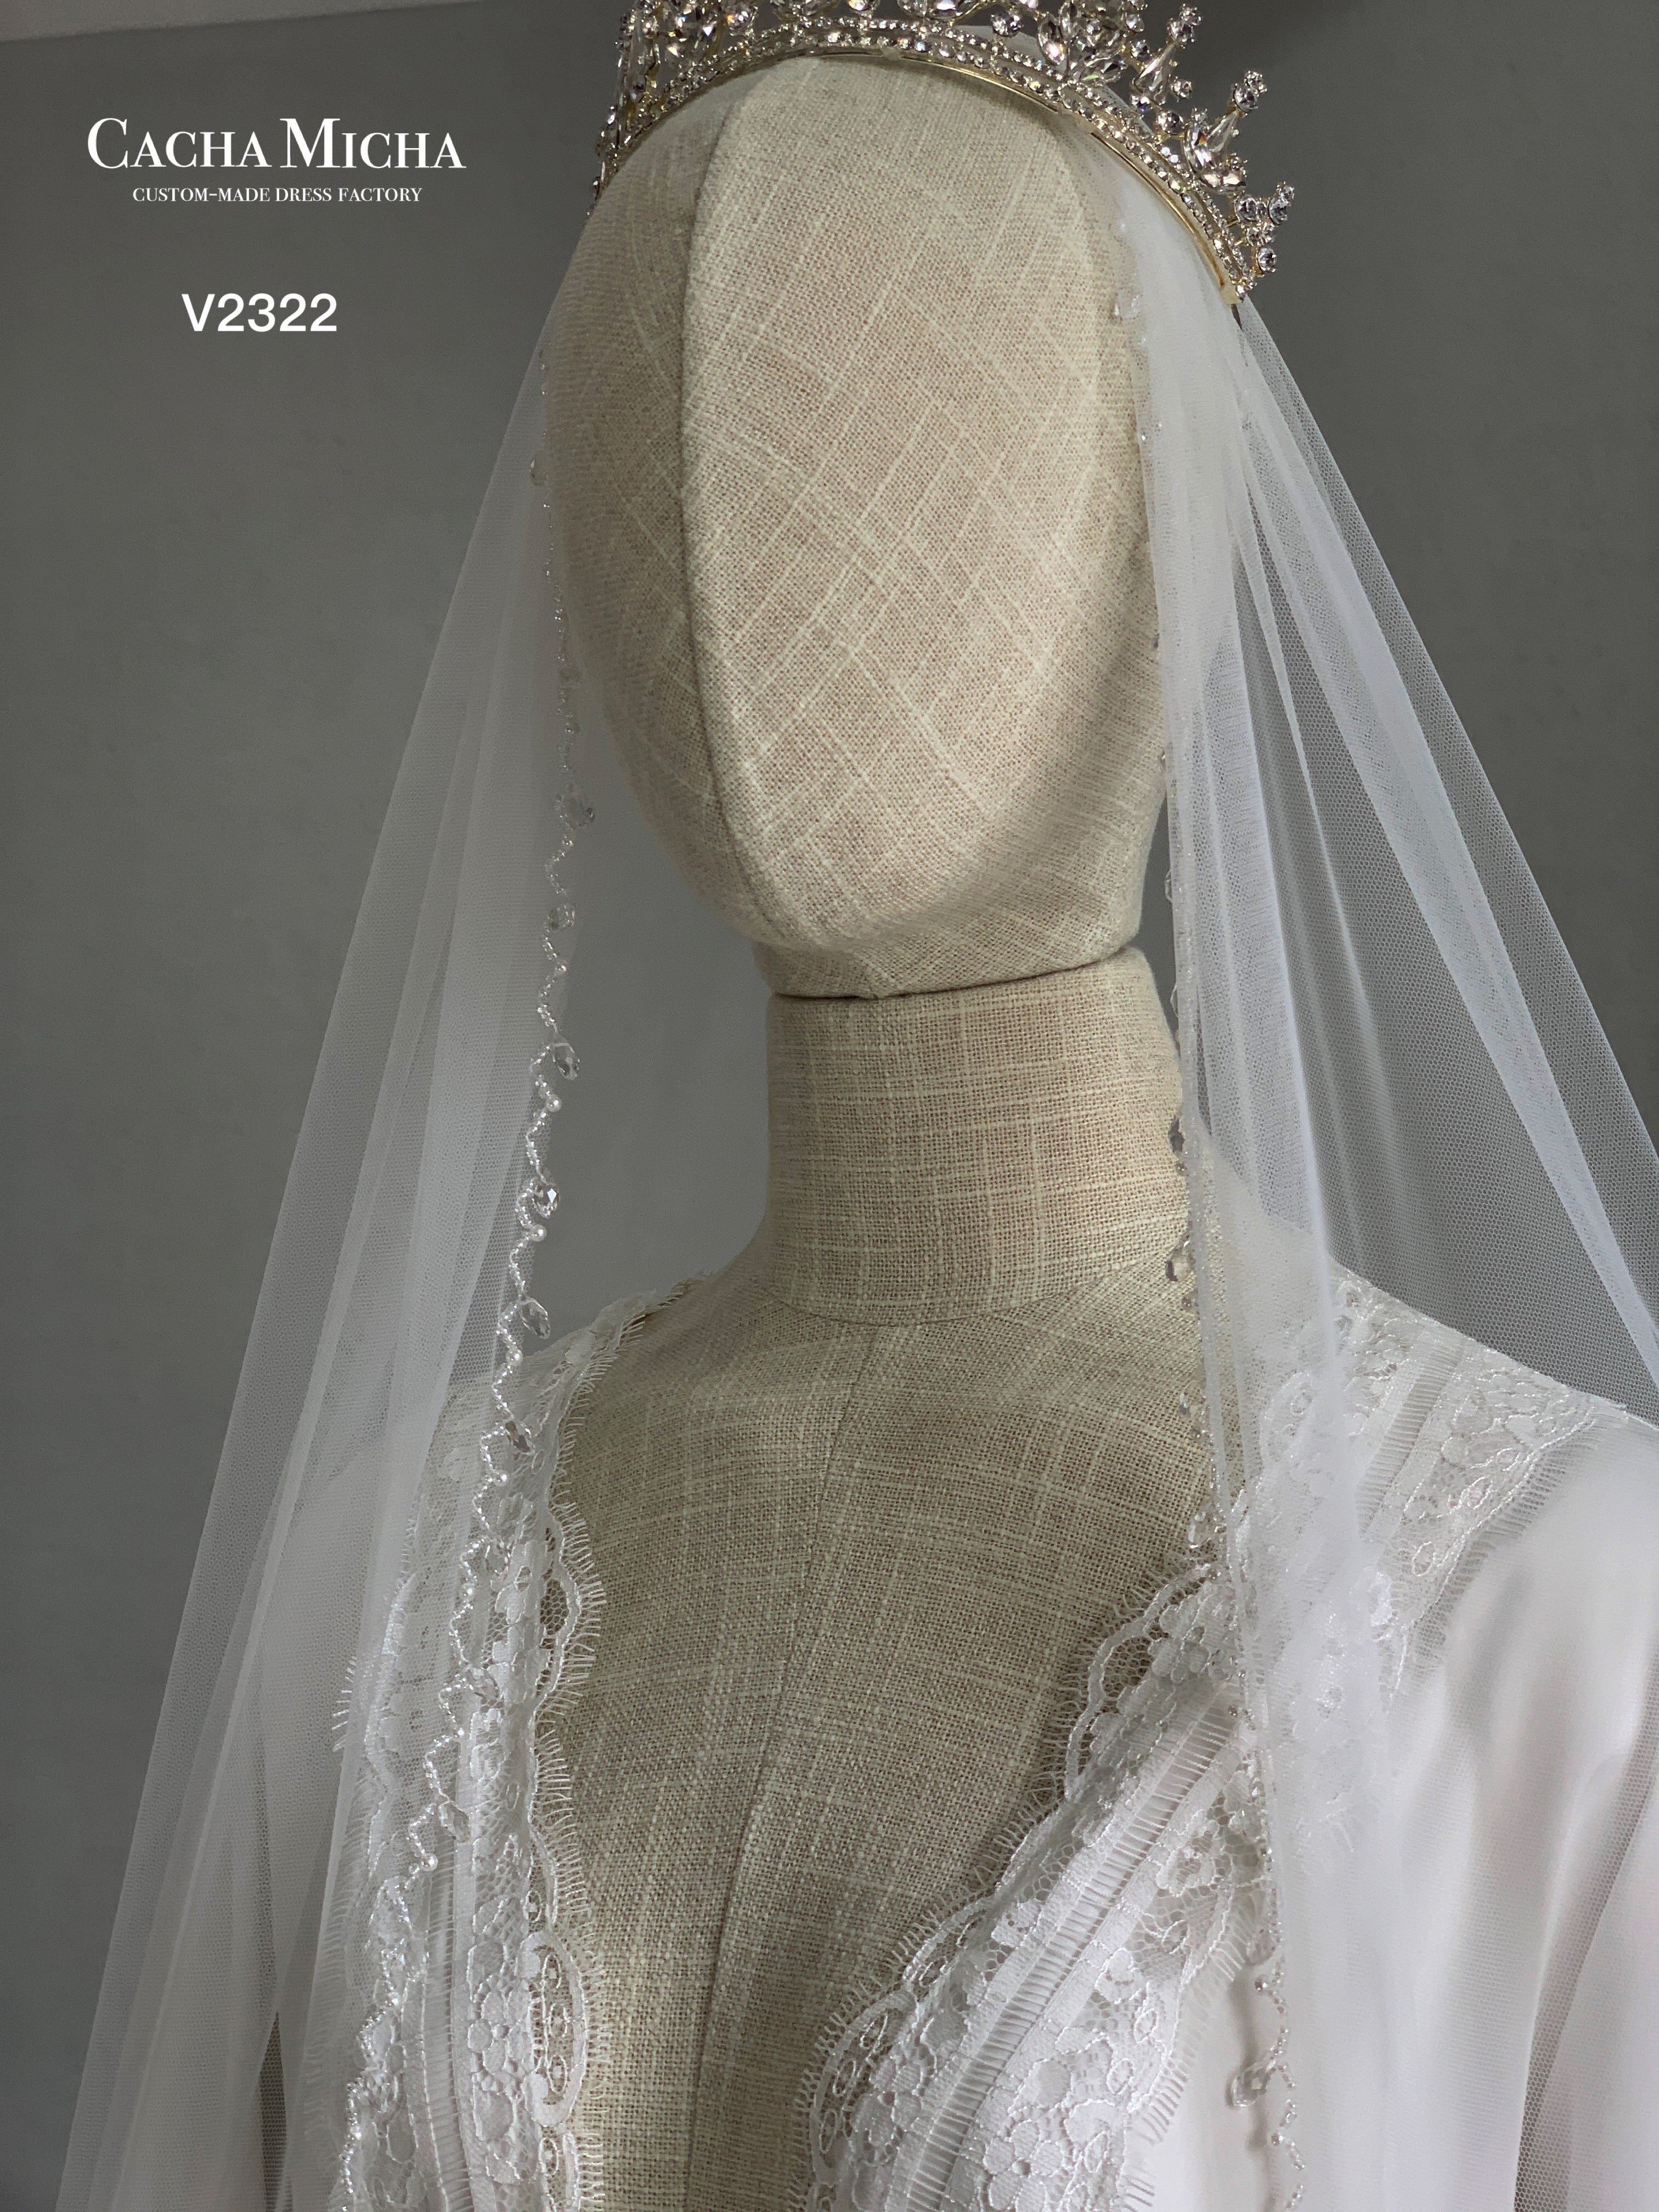 Tear Drop Beaded Edge Floor Length Bridal Veil V2321